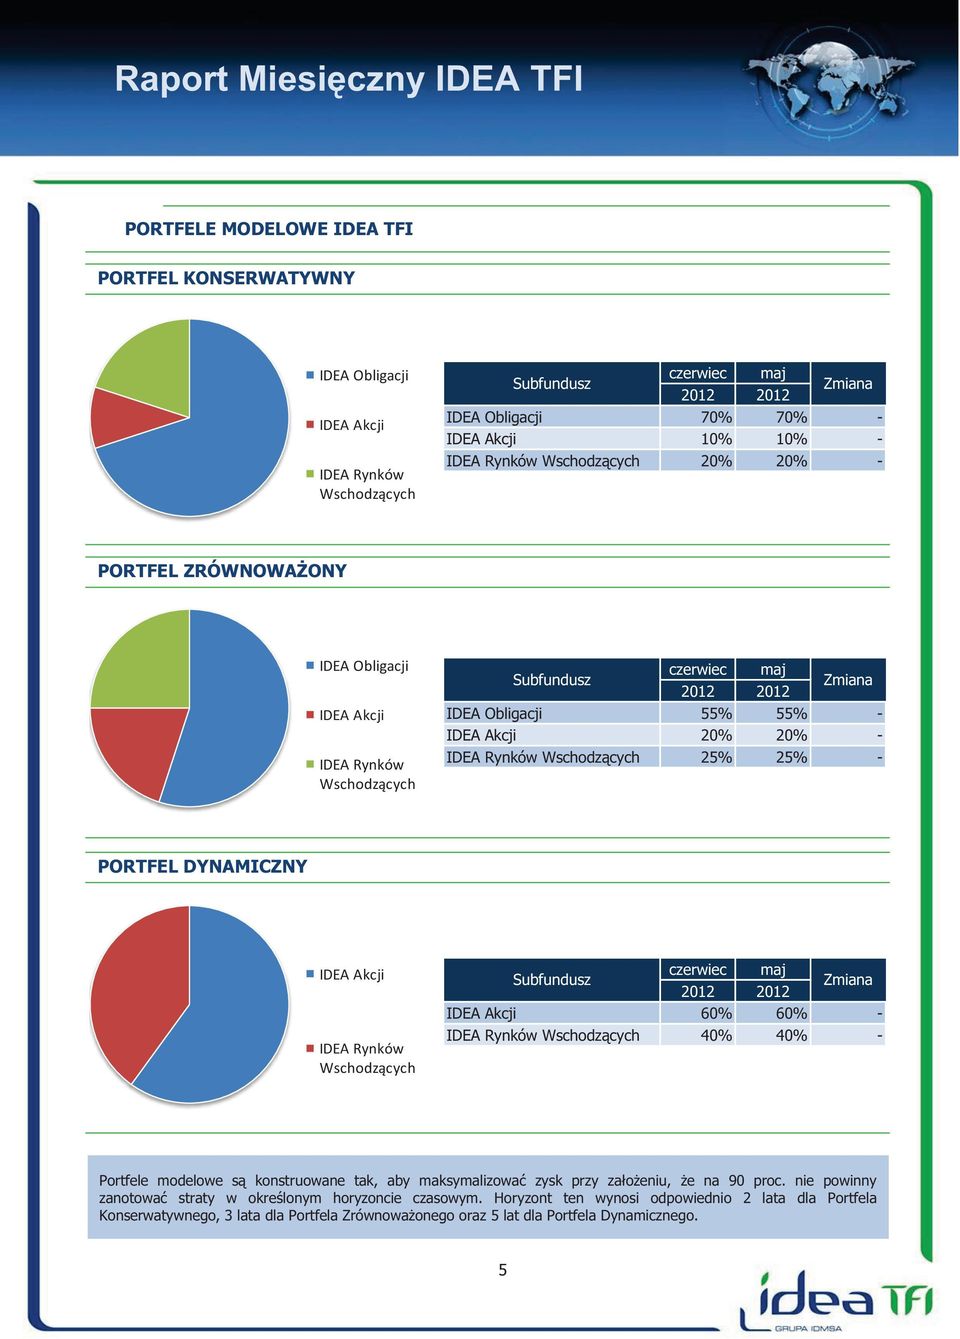 Wschodzących 25% 25% - PORTFEL DYNAMICZNY IDEA Akcji IDEA Rynków Wschodzących Subfundusz czerwiec maj 2012 2012 Zmiana IDEA Akcji 60% 60% - IDEA Rynków Wschodzących 40% 40% - Portfele modelowe są